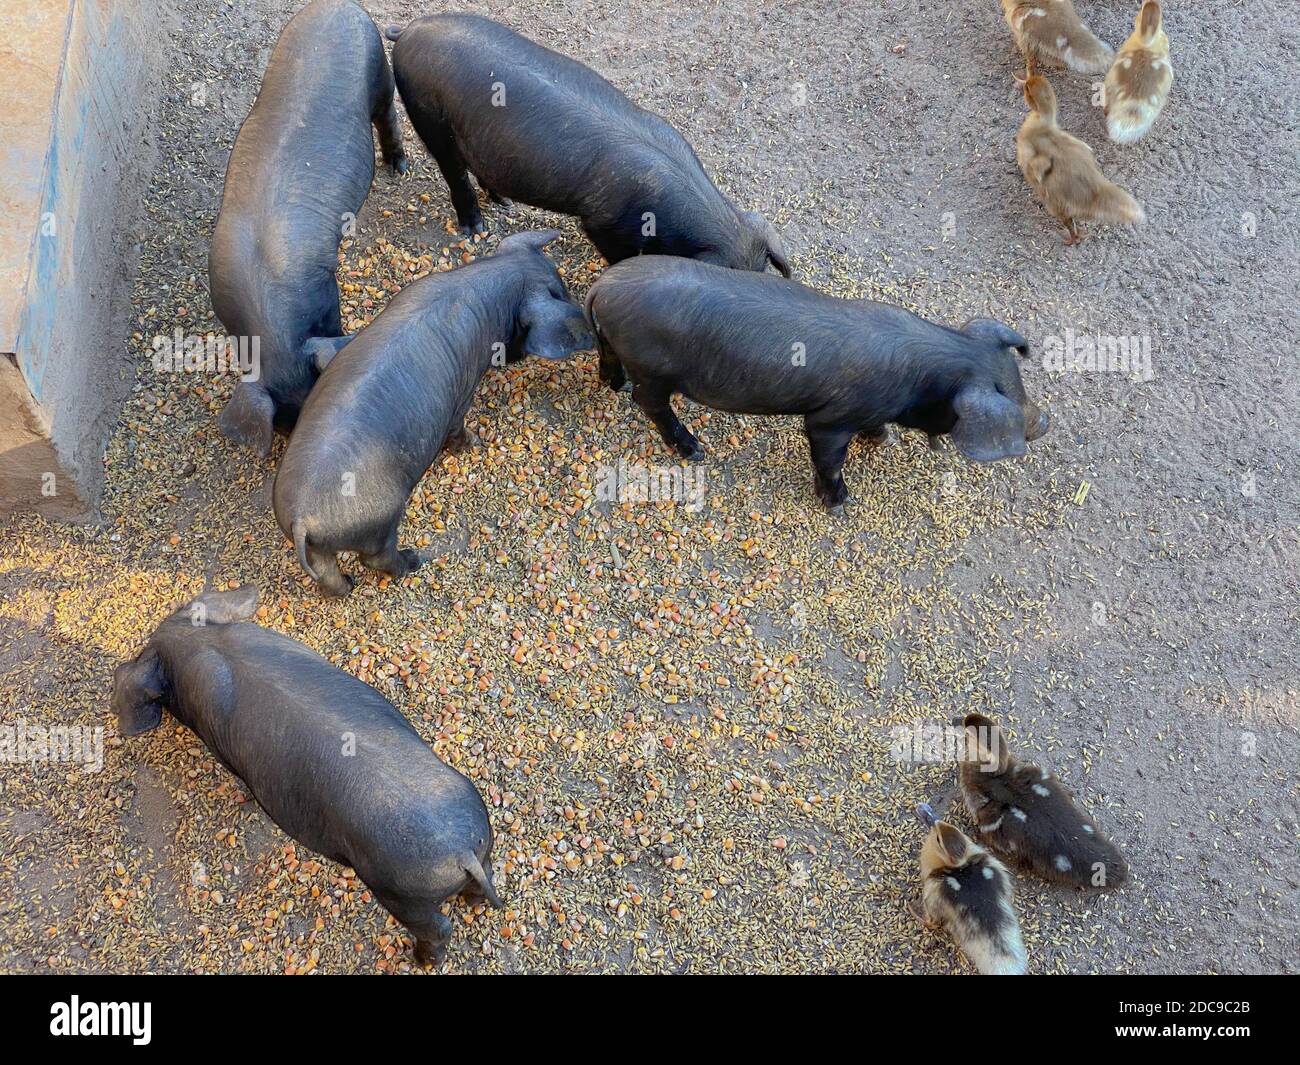 Black Iberian pigs in a farm in Mallorca (Porcella Negra Mallorquina) Stock Photo